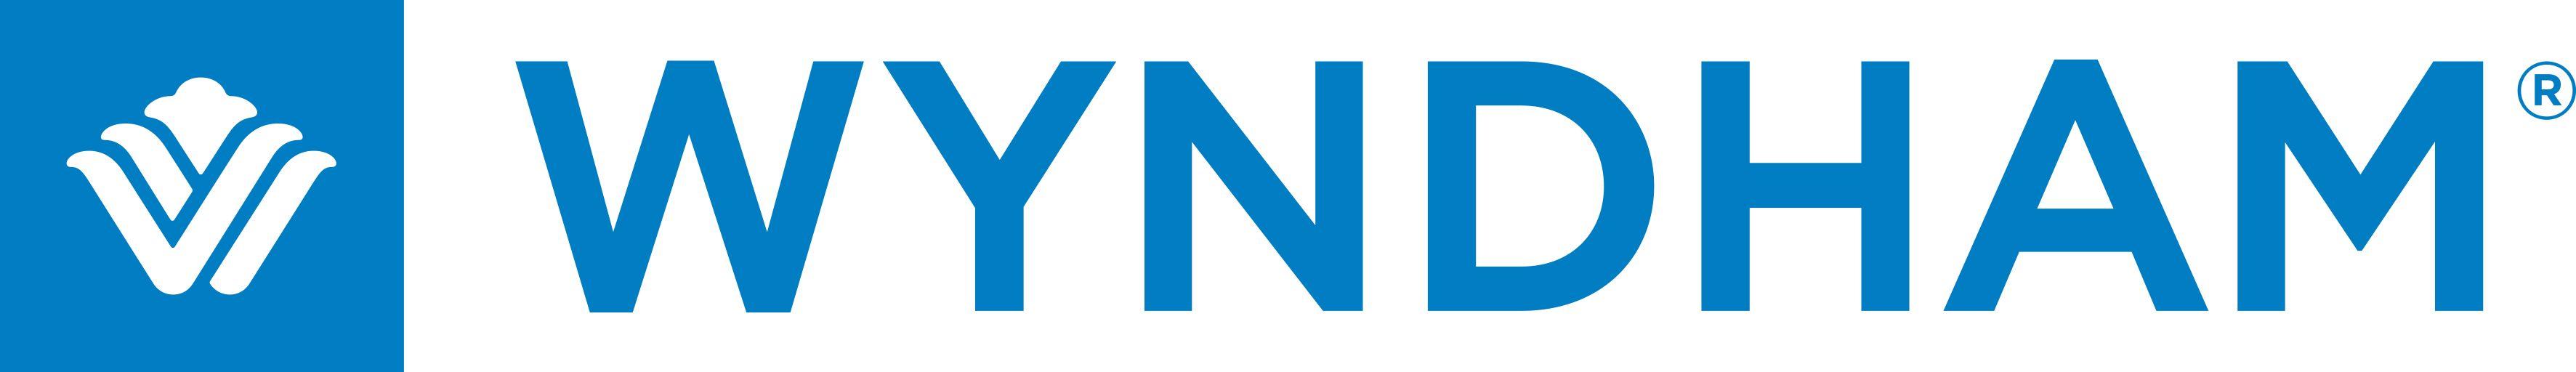 Wyndham Logo - Wyndham Hotels and Resorts Logo